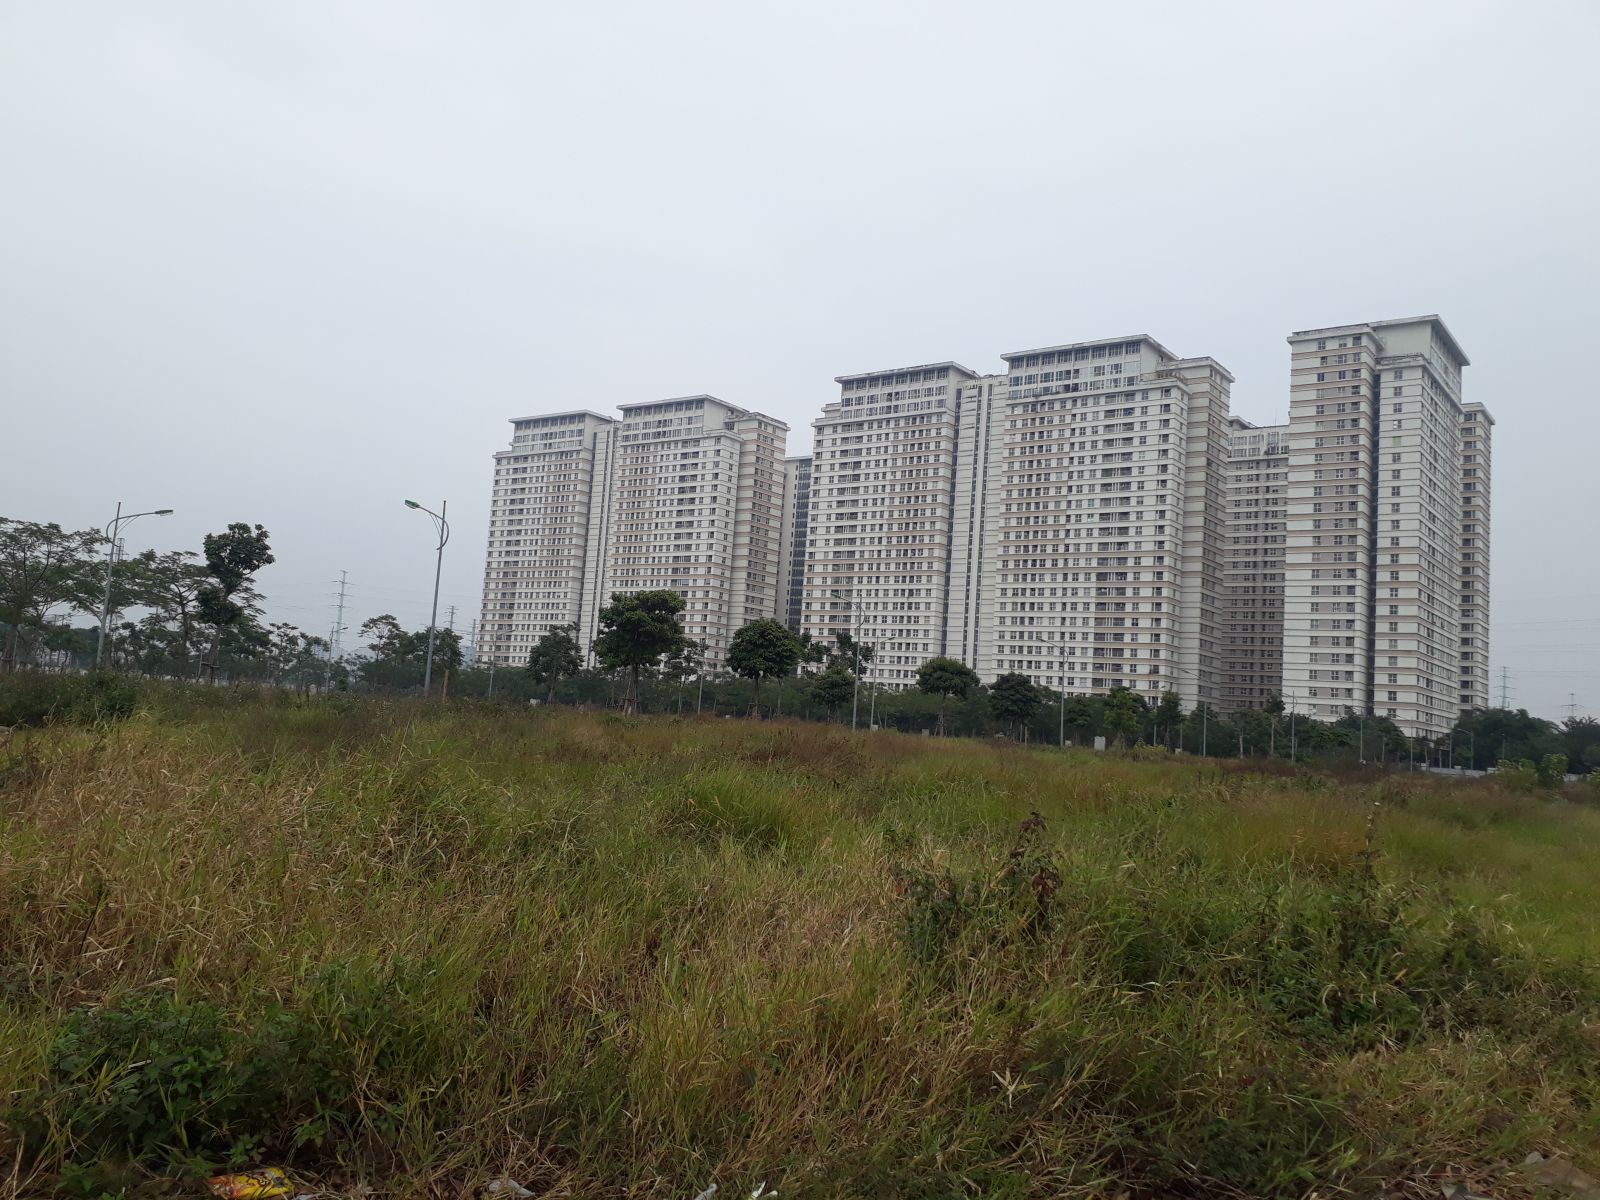 Khu đô thị Dương Nội chậm triển khai, lãng phí nguồn lực đất đai.